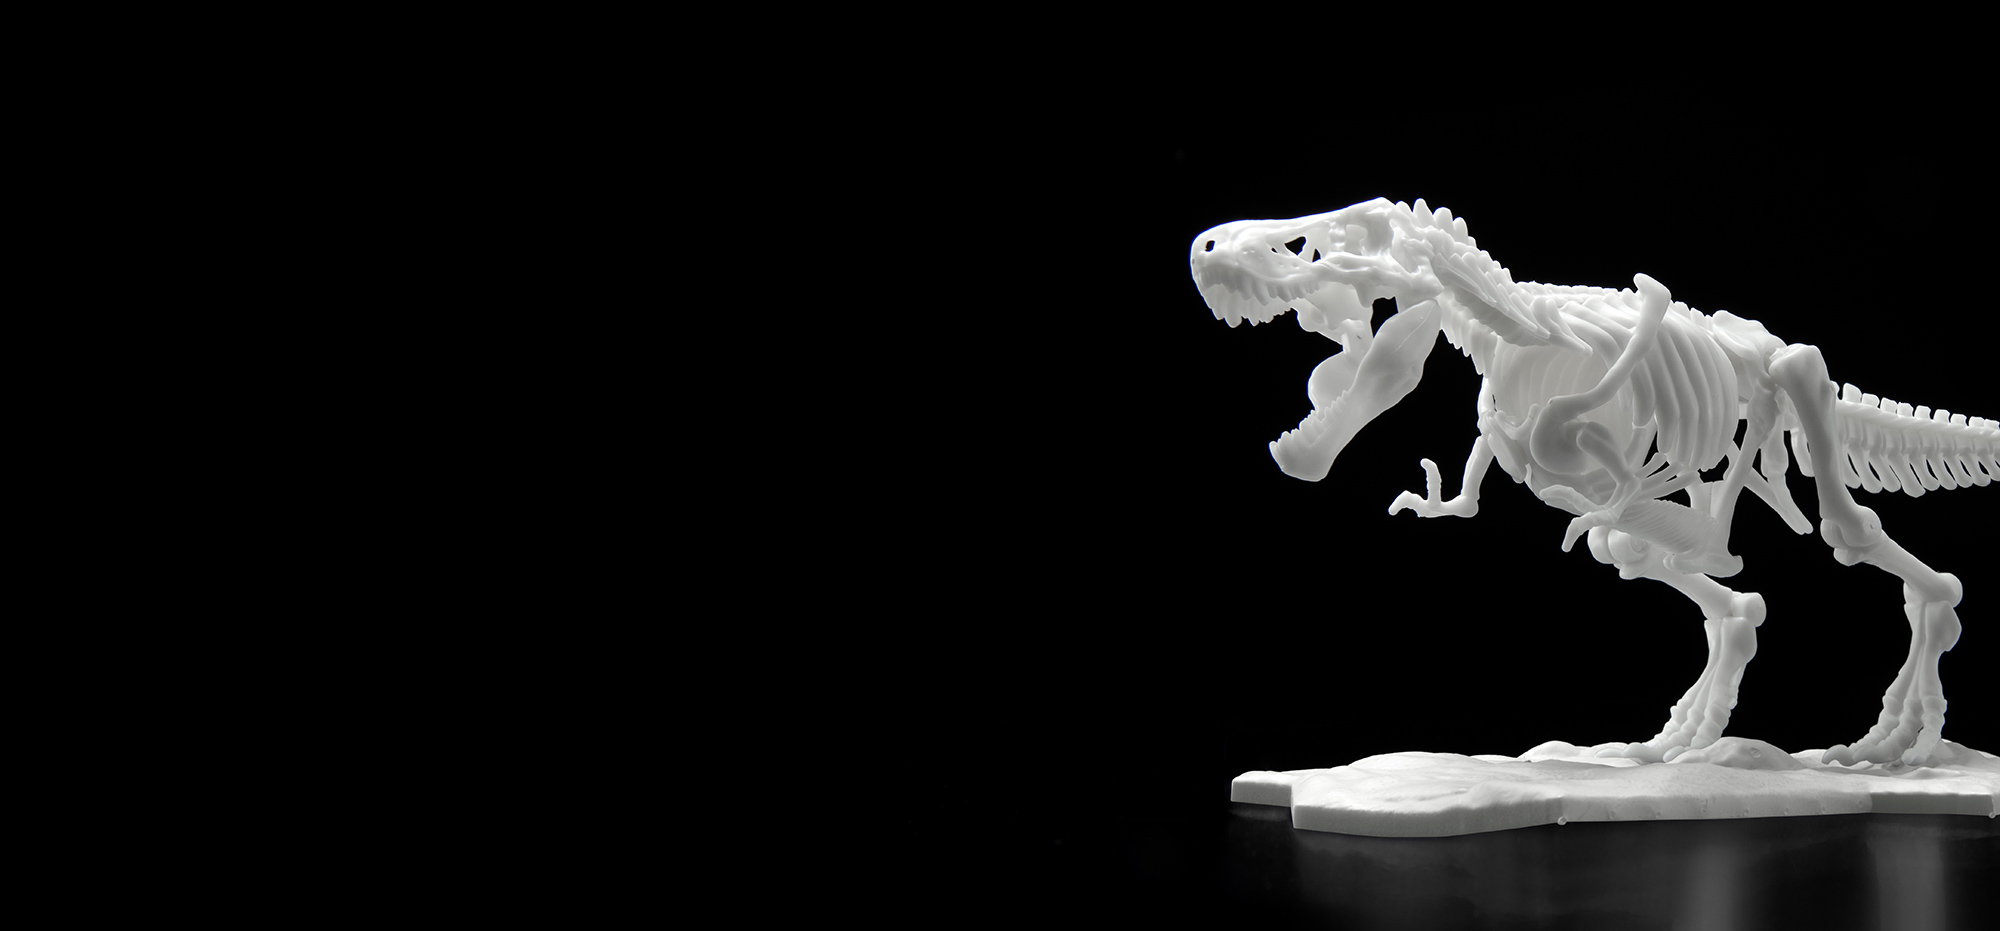 恐龙骨架塑料模型 霸王龙